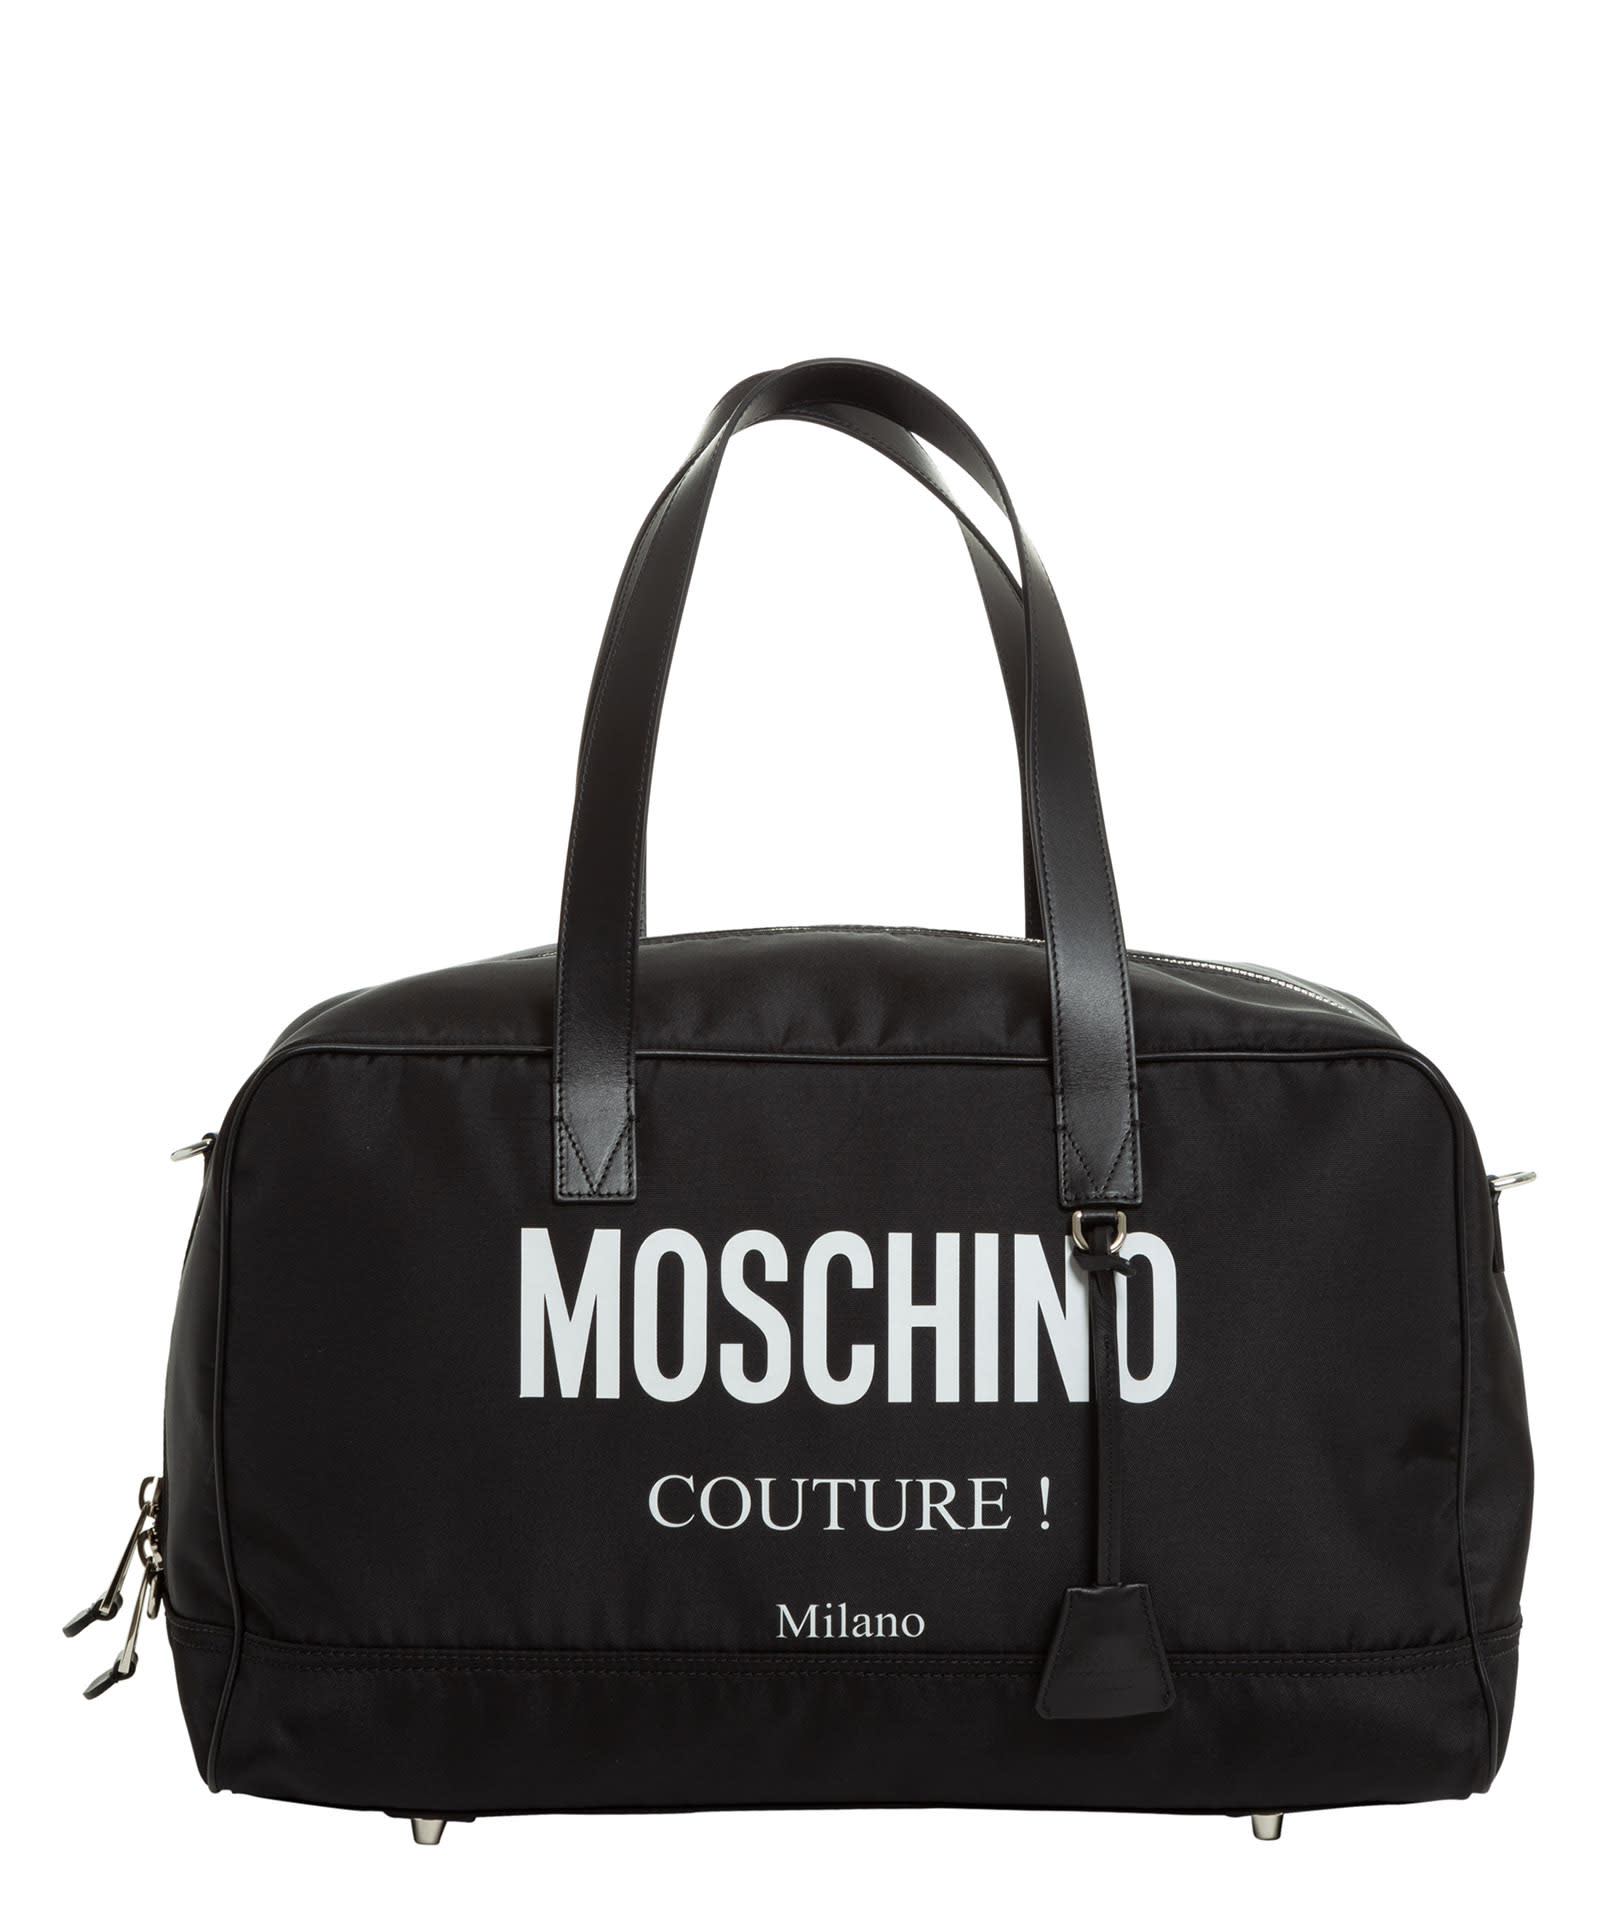 Moschino Duffle Bag